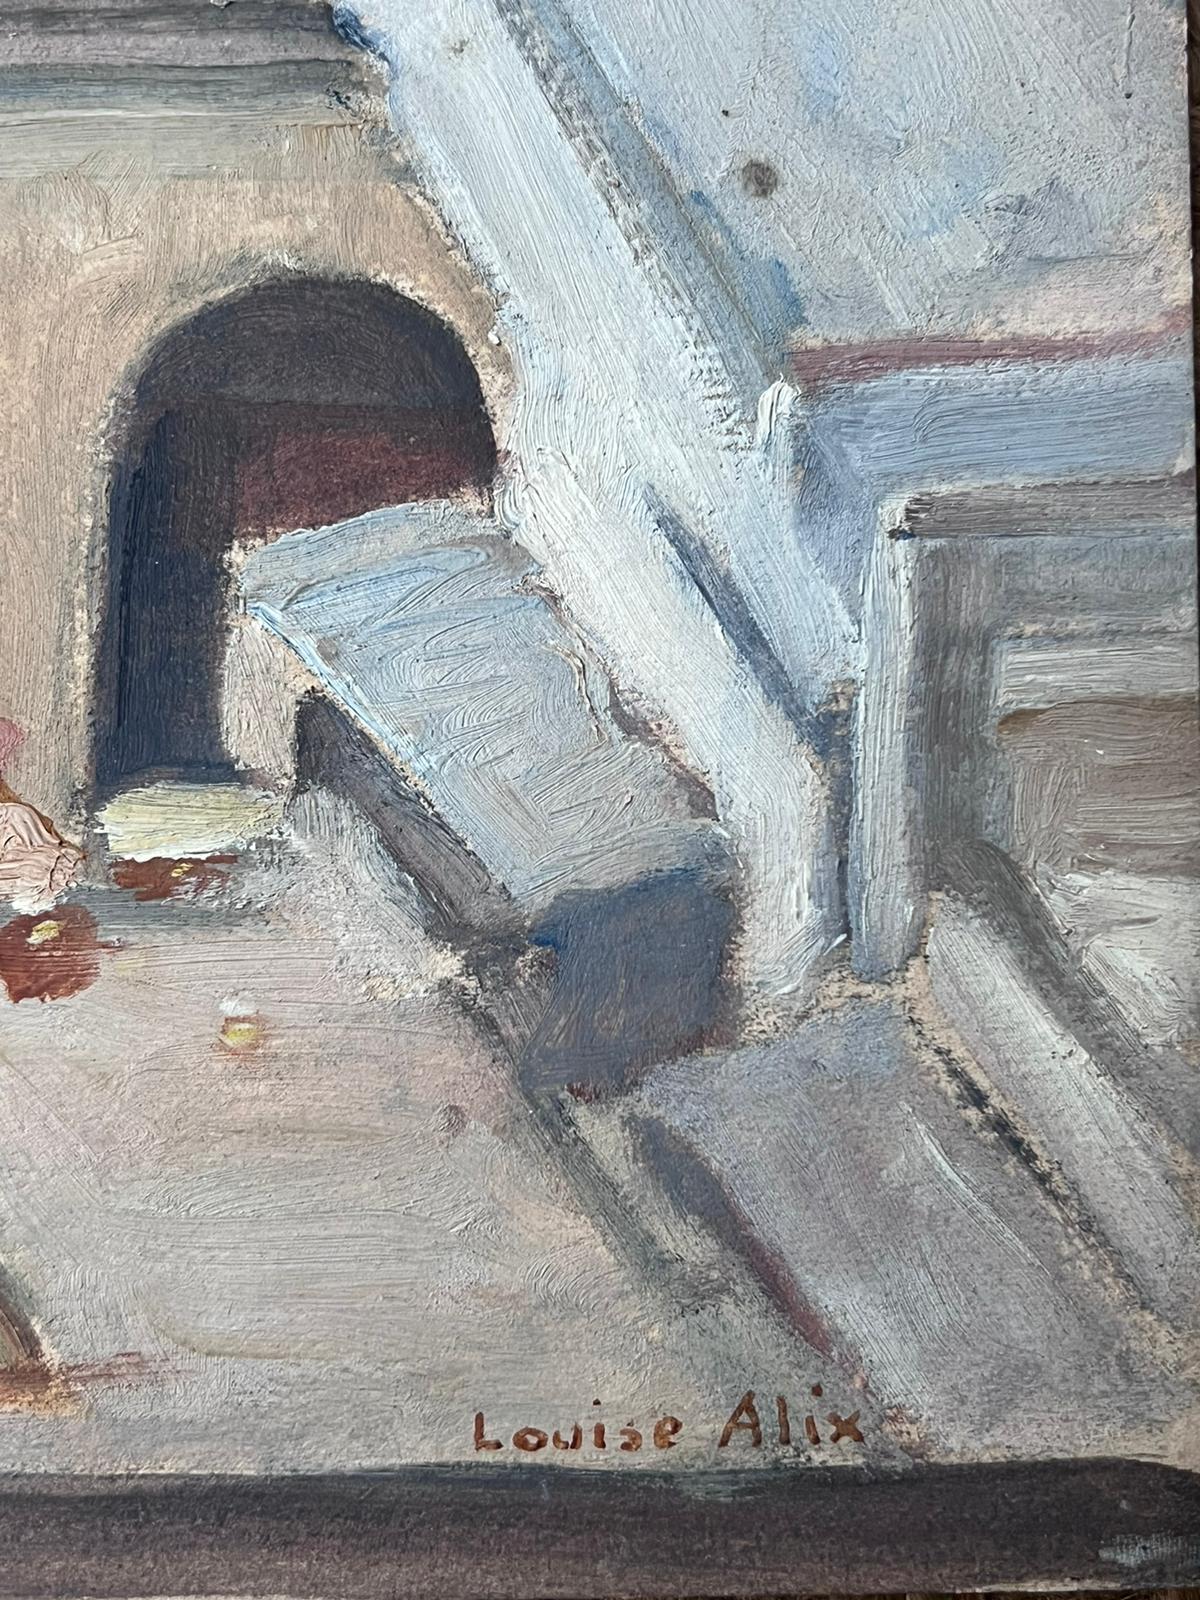 Französisch-impressionistisches Ölgemälde in Grau, Town Roof Tops, geraffte Figuren, 1930er Jahre – Painting von Louise Alix